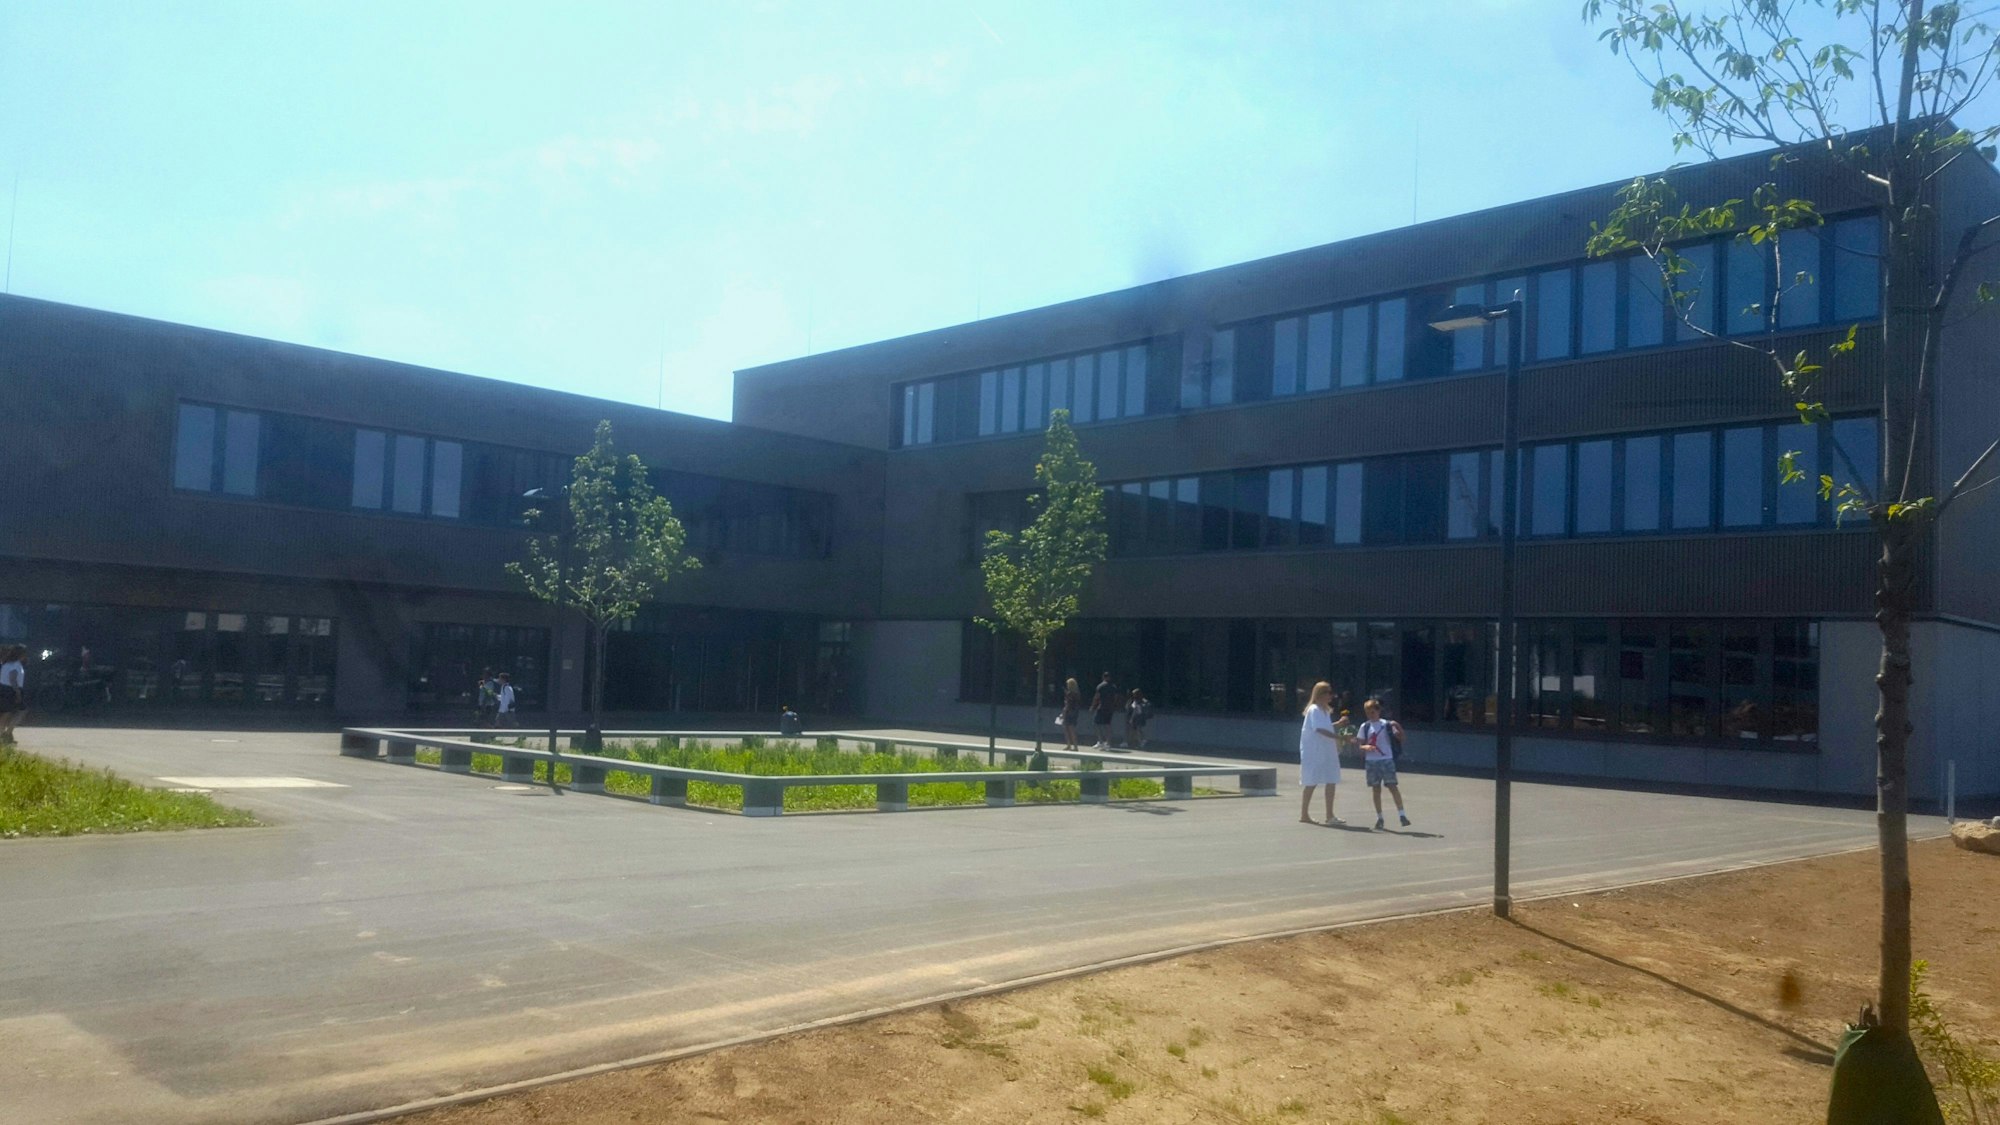 Auf dem Foto ist das neue Gymnasium ander Zusestraße in Köln zu sehen. Im Vordergrund ist eine Asphaltfläche mit Bänken und einzelnem Grün, im Hintergrund ein großer Kastenbau mit hohen Fenstern.